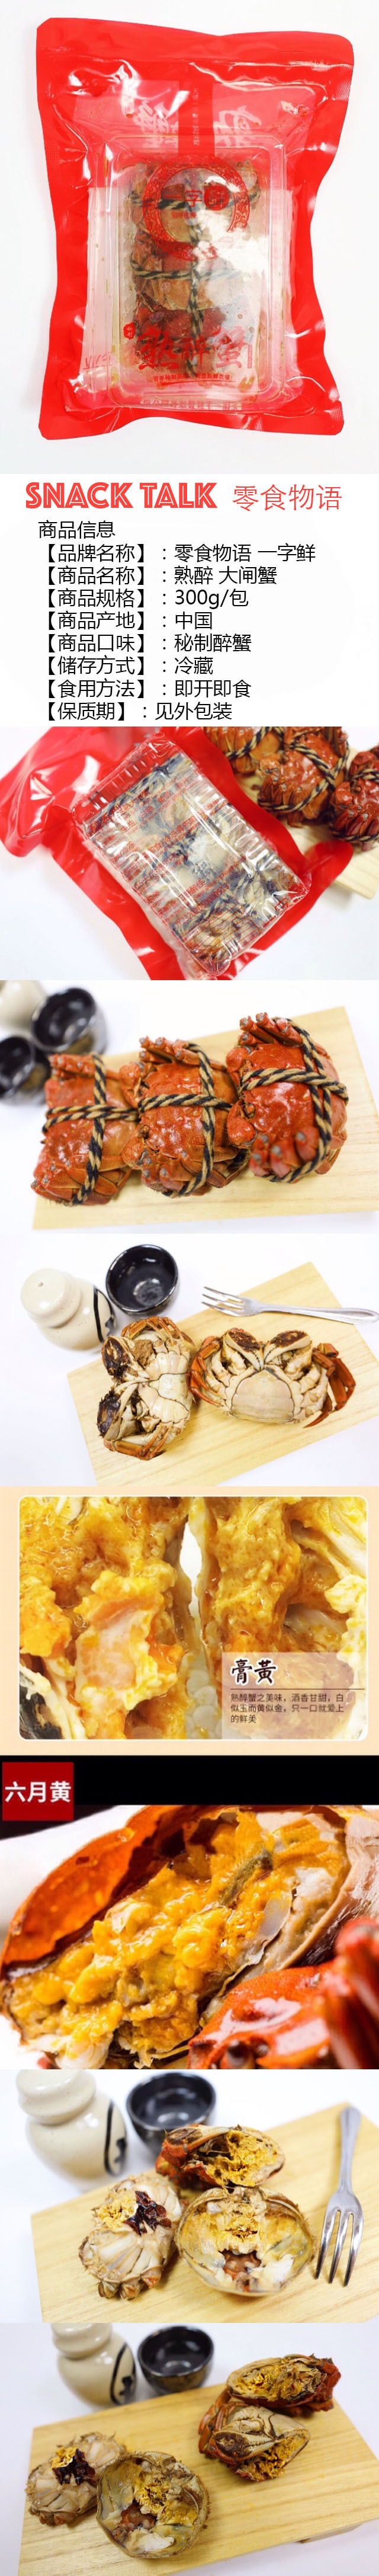 SNACK TALK Yi Zi Xian Cooked Drunken Mitten Crab 300g